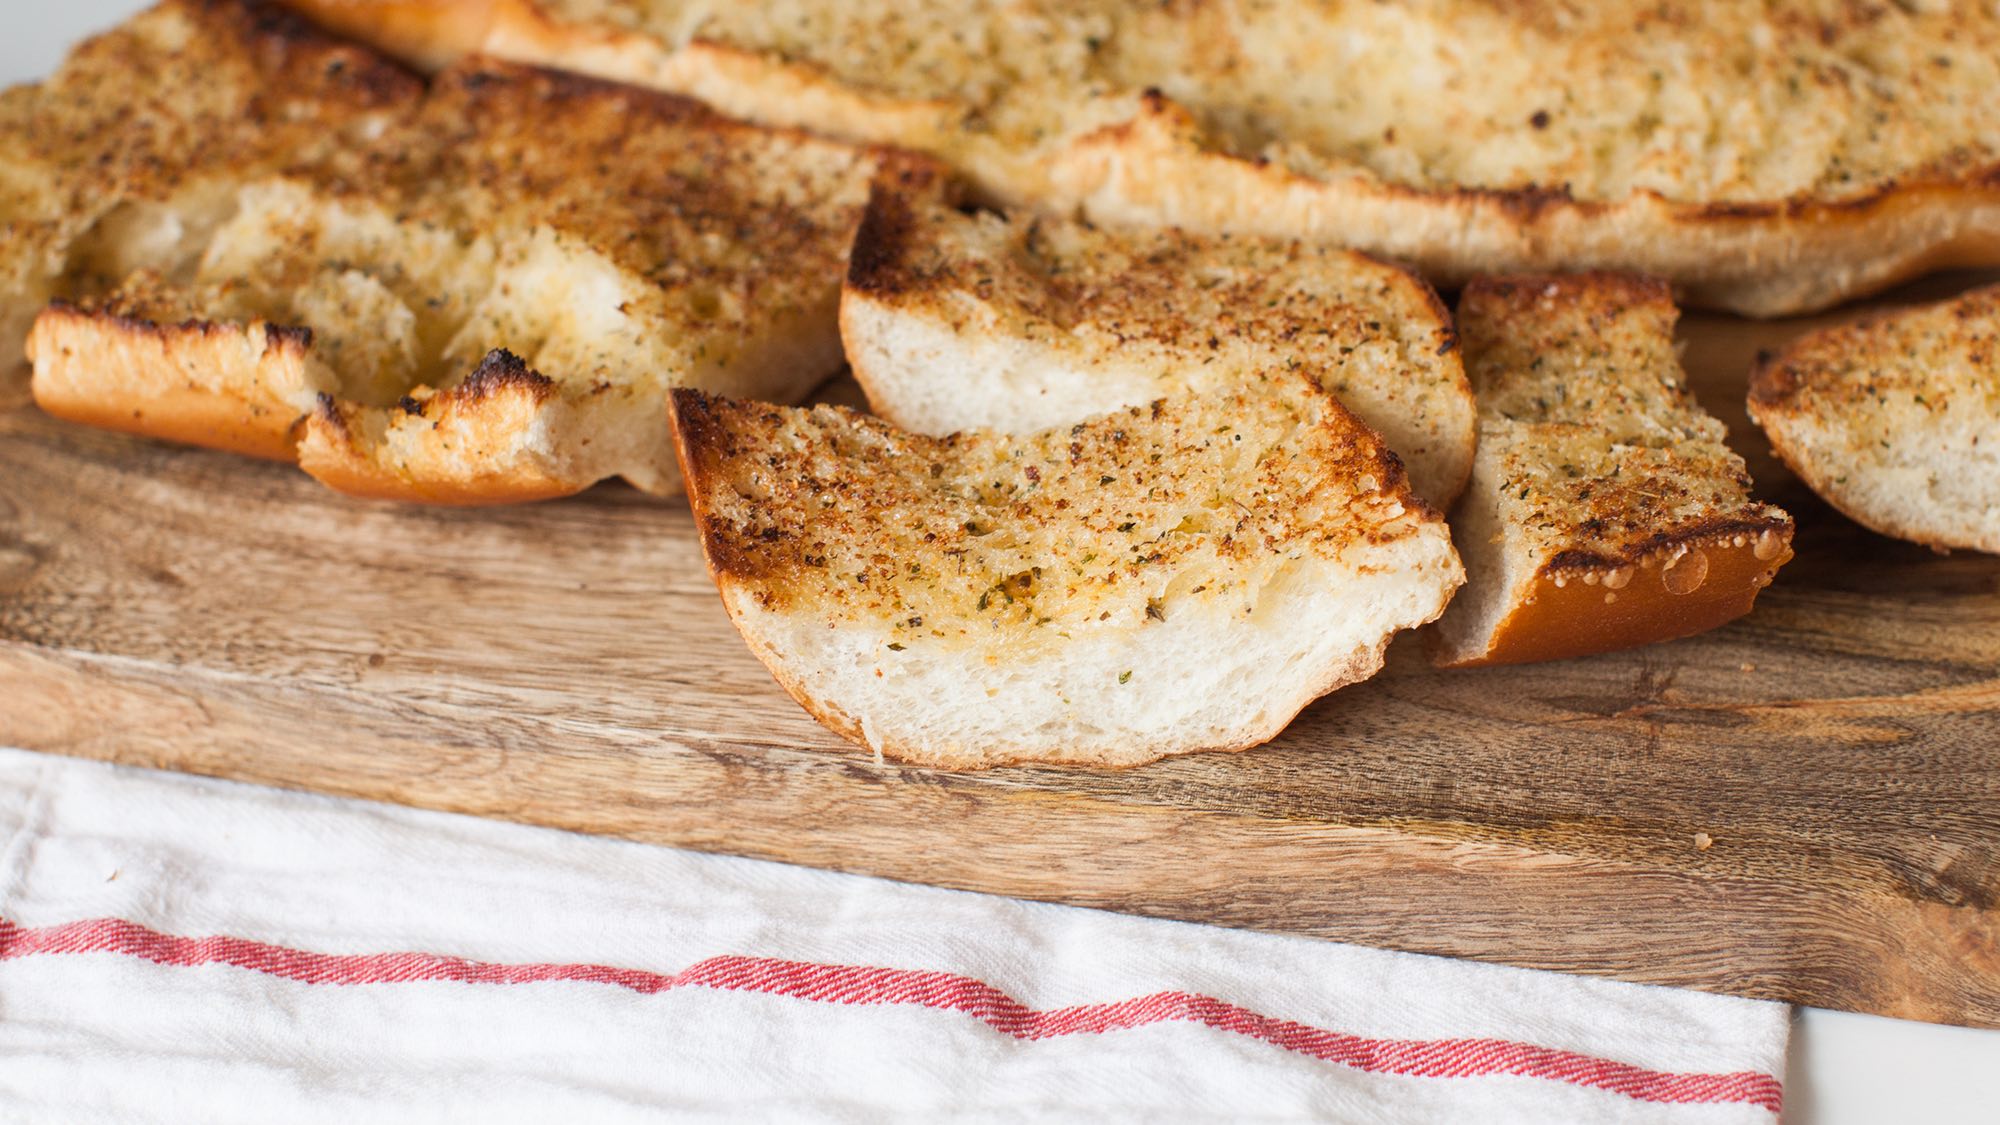 garlic-and-herb-bread-the-little-kitchen.jpg